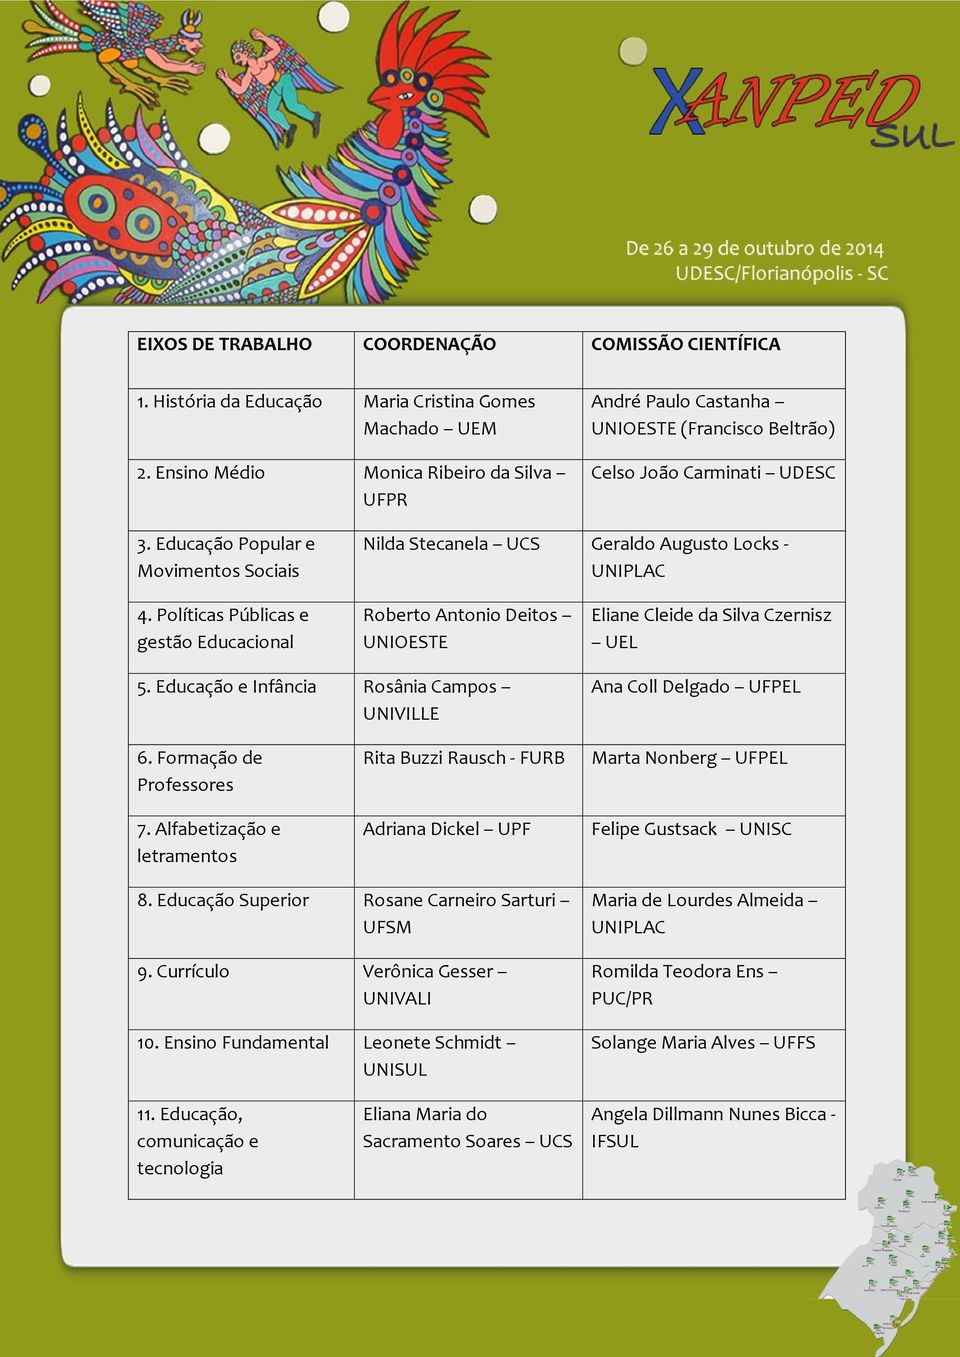 Educação Popular e Movimentos Sociais Nilda Stecanela UCS Geraldo Augusto Locks - UNIPLAC 4.